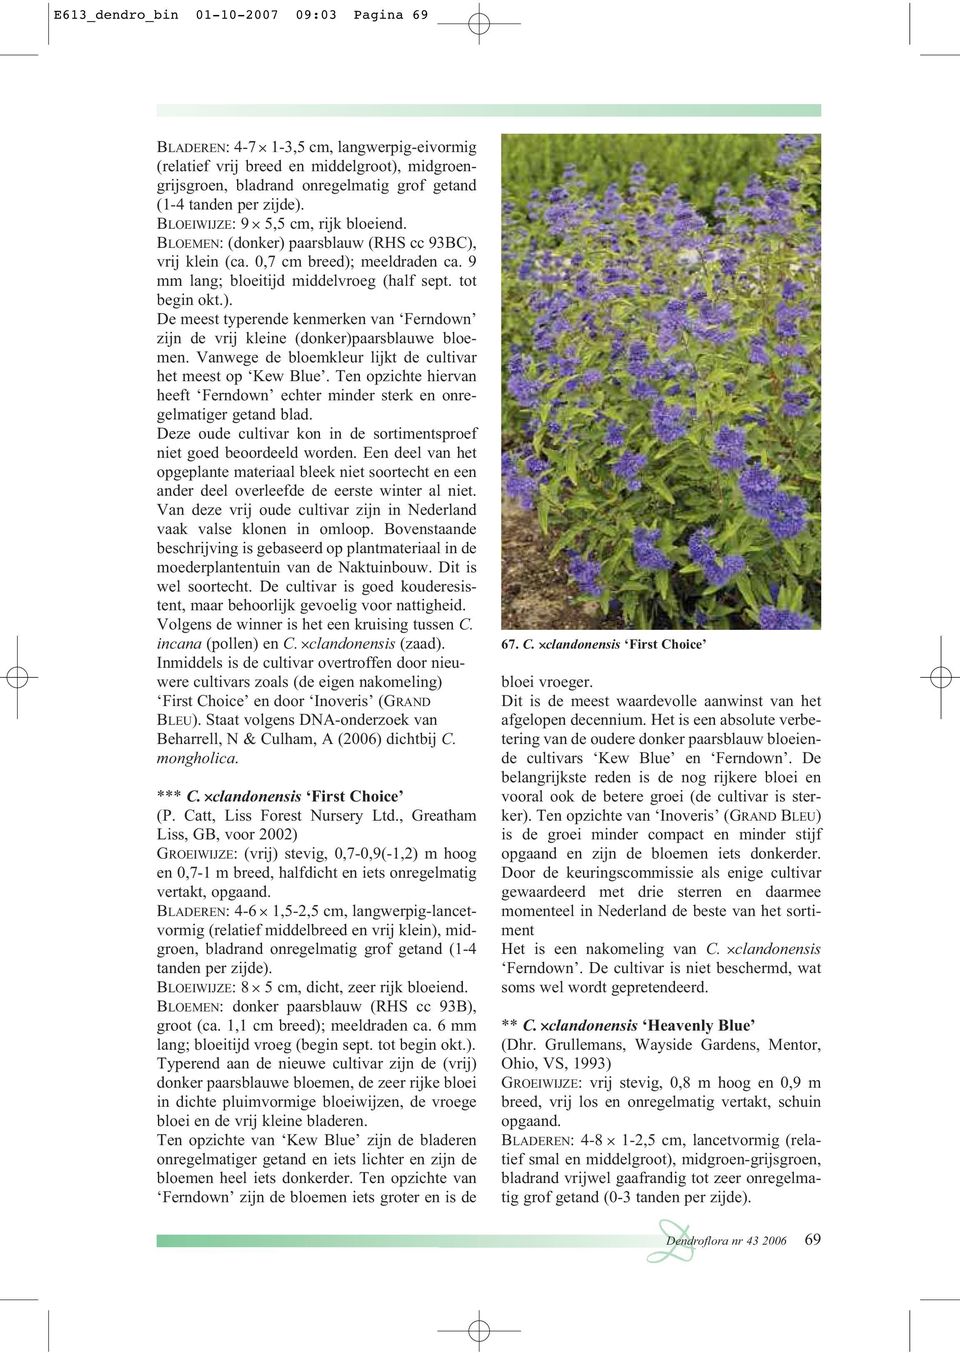 Vanwege de bloemkleur lijkt de cultivar het meest op Kew Blue. Ten opzichte hiervan heeft Ferndown echter minder sterk en onregelmatiger getand blad.